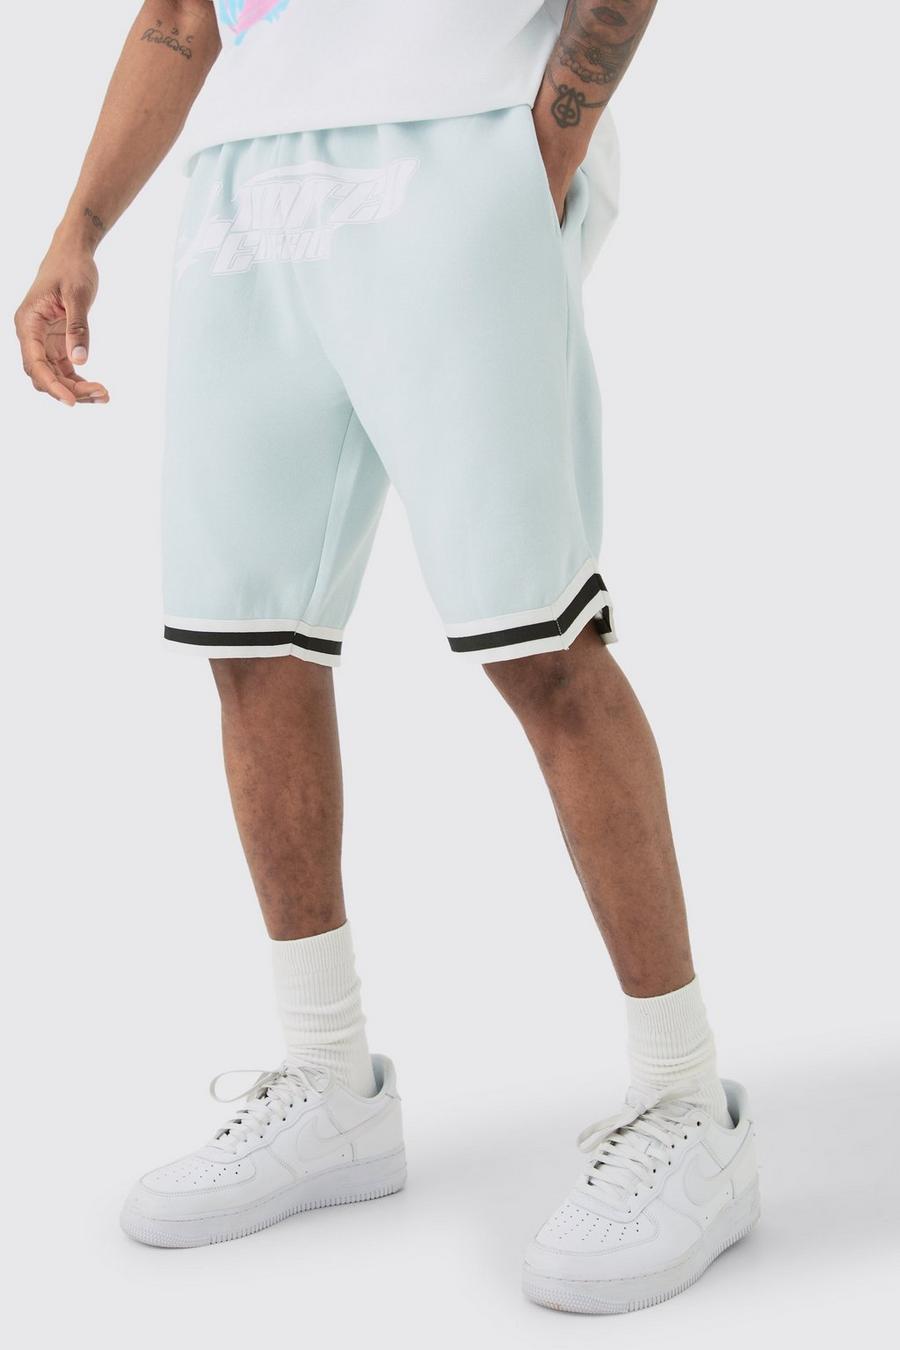 Pantalón corto Tall holgado de baloncesto en azul claro Limited Edition, Light blue